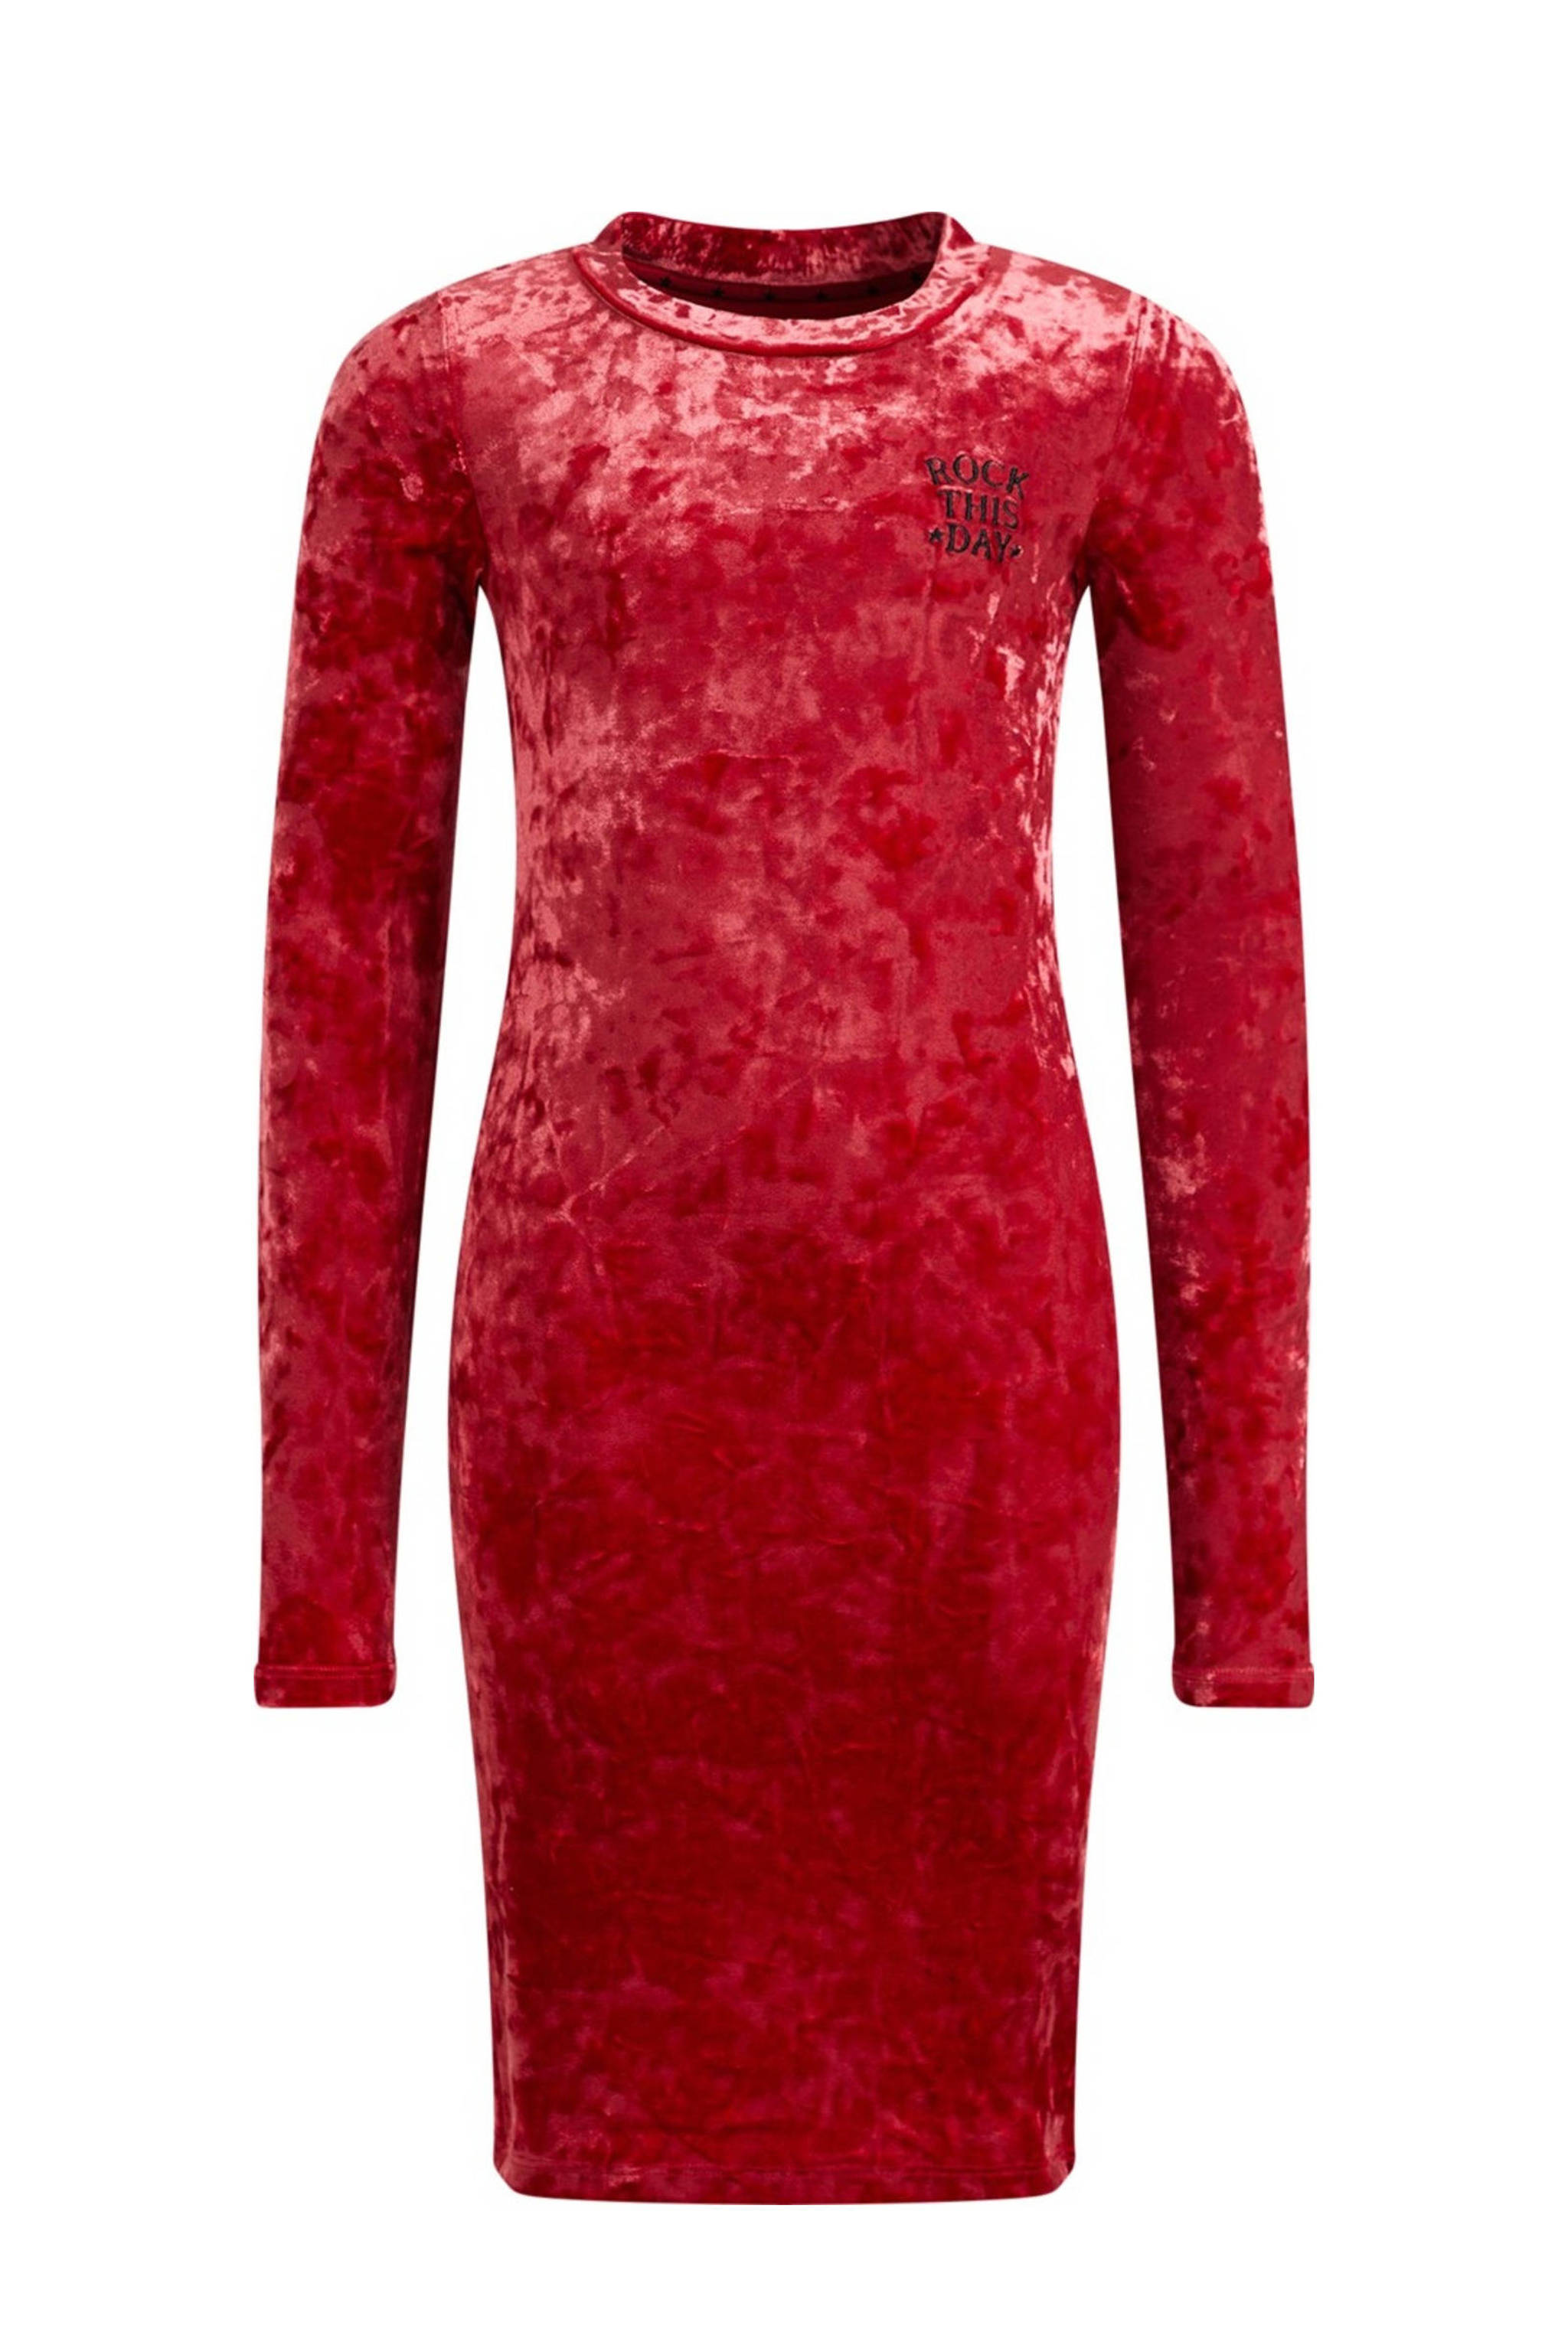 vaas belasting Springplank WE Fashion velours jurk rood | wehkamp